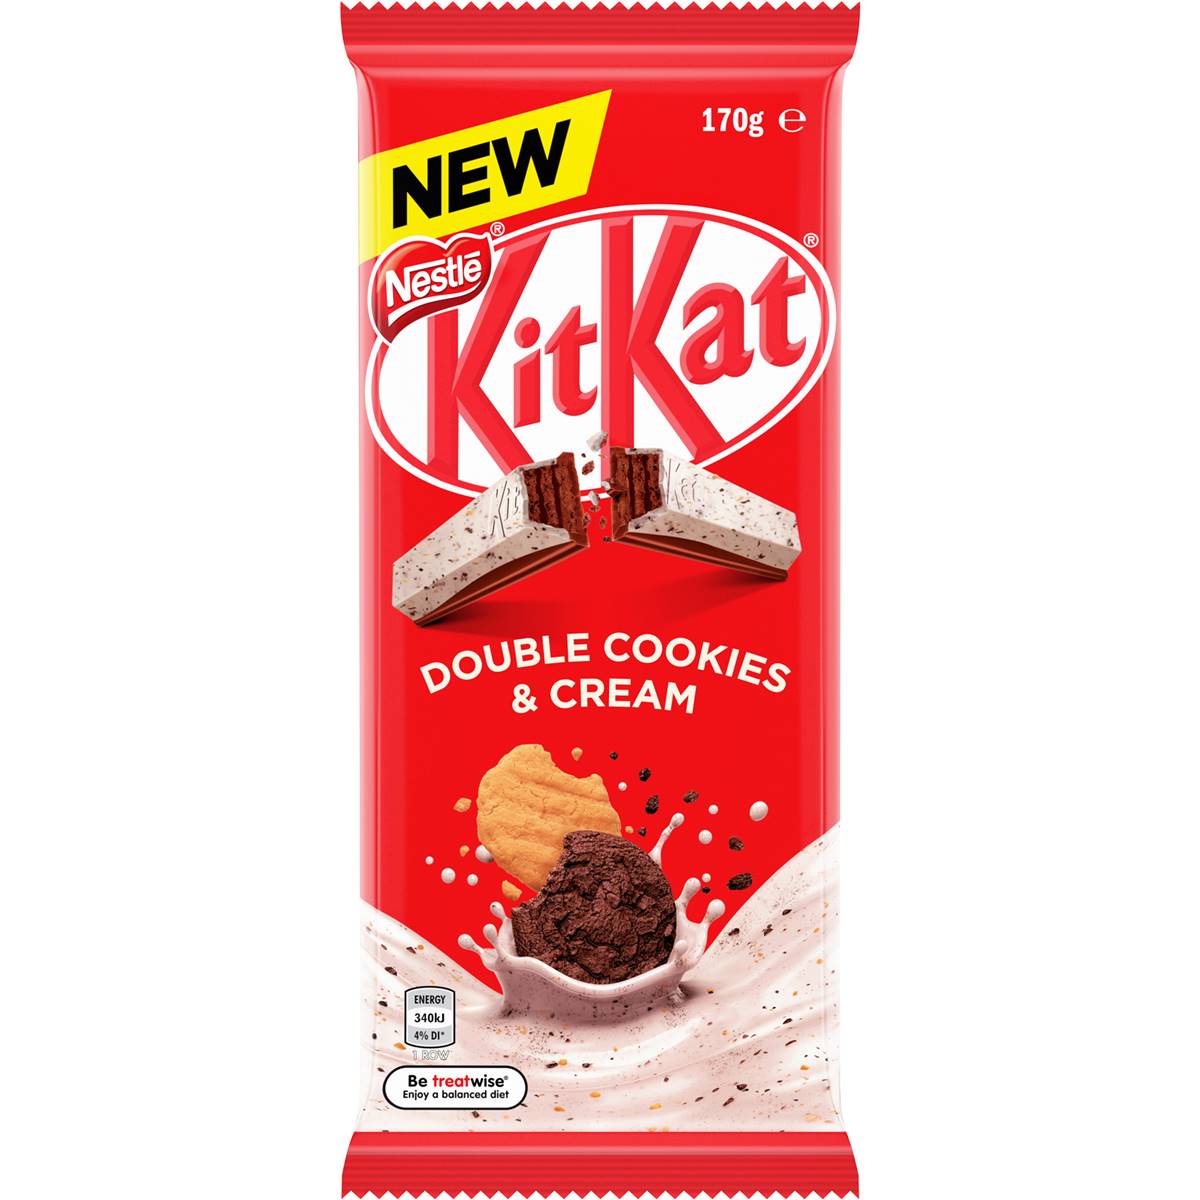 Calories in Nestle Kitkat Double Cookies & Cream Block calcount